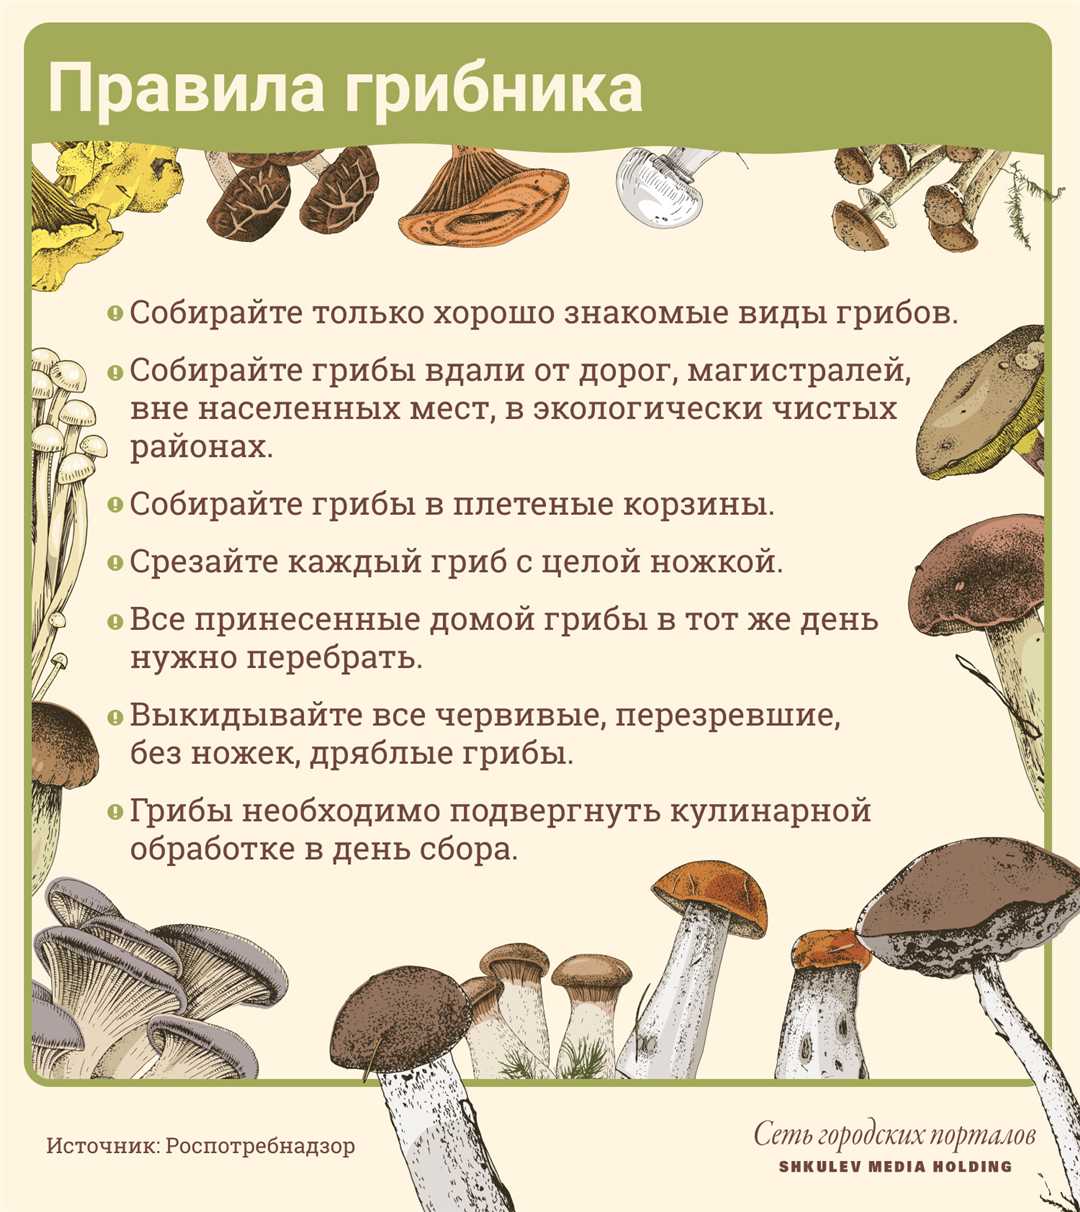 Чем опасны съедобные грибы